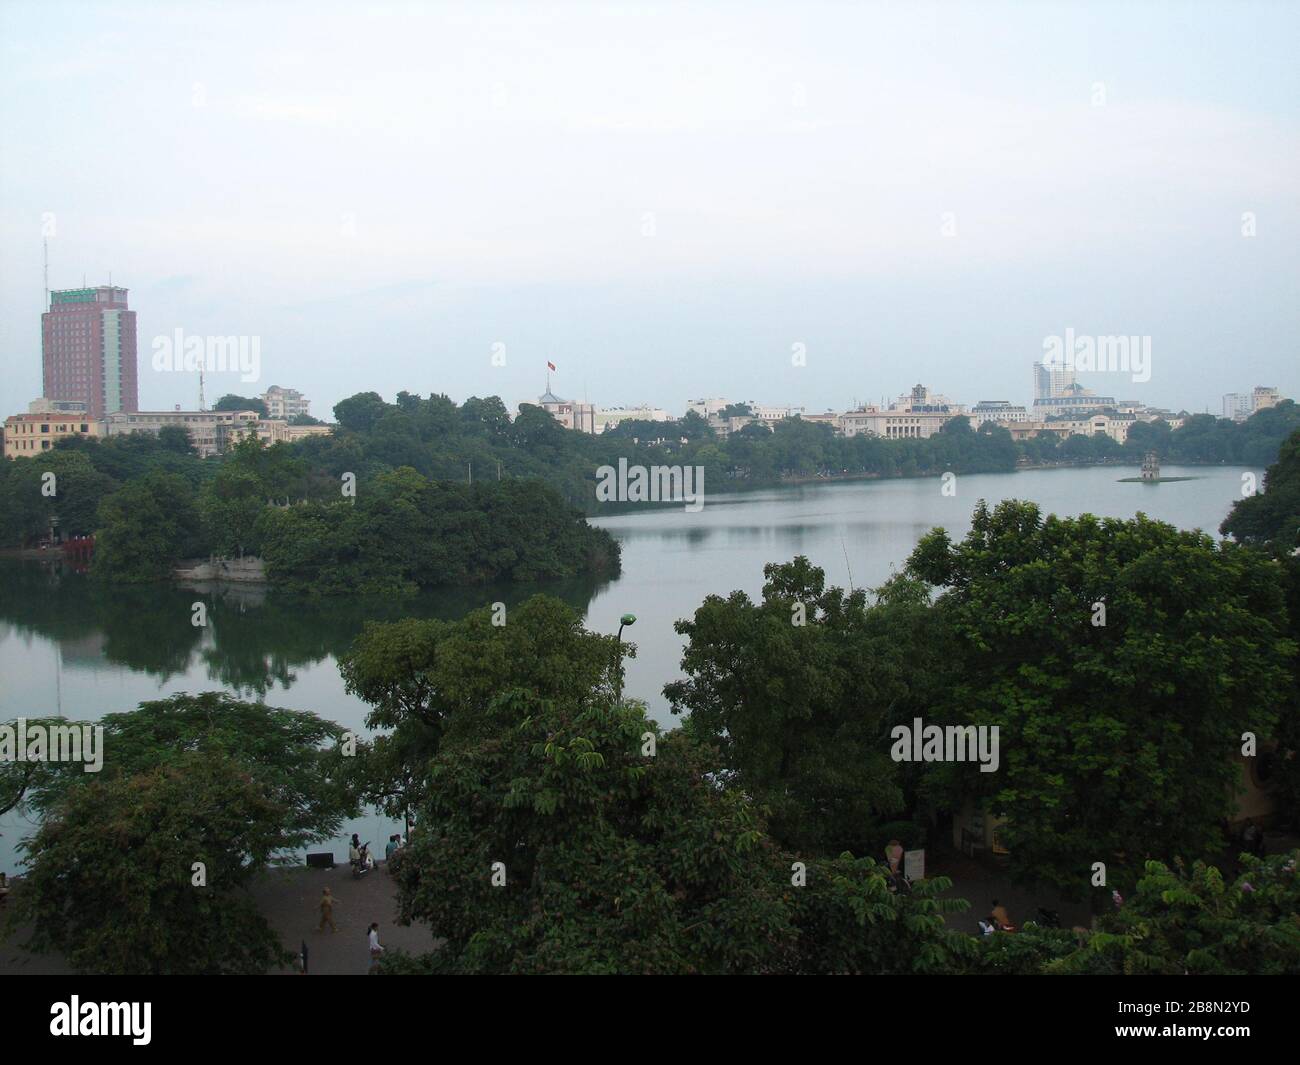 Tiếng Việt: Toàn cảnh Hồ Hoàn Kiếm nhìn từ Quảng trường Đông Kinh ...